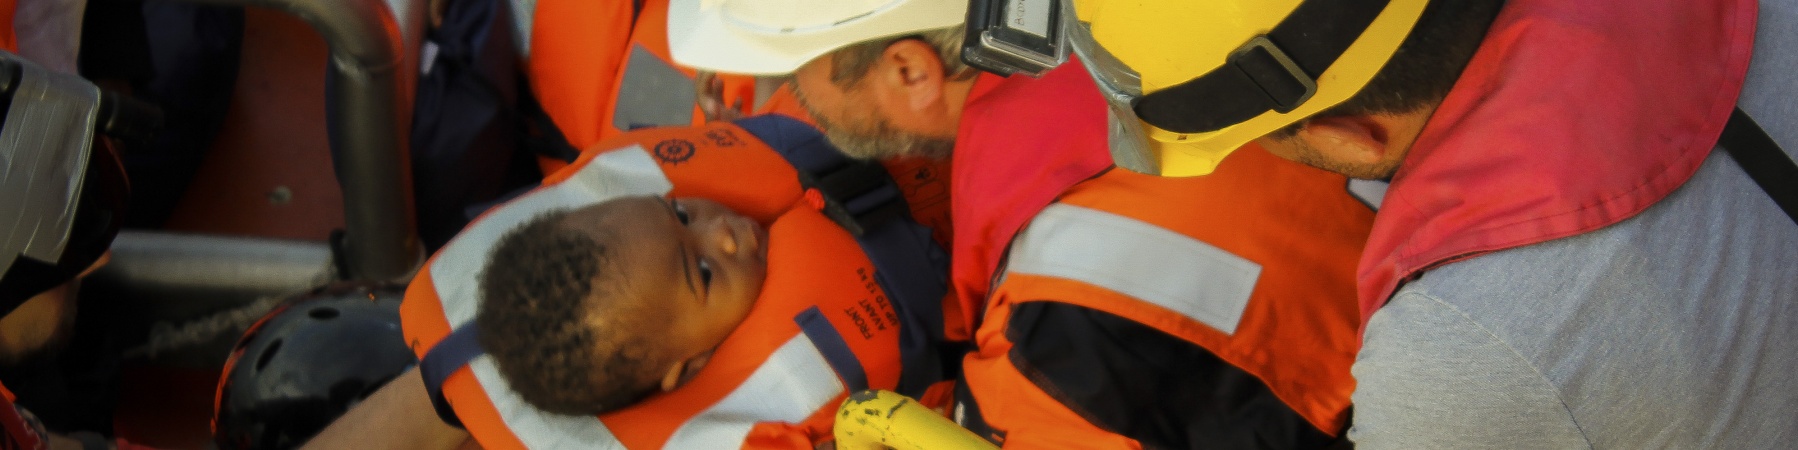 Salvataggio bambino durante operazione di ricerca e soccorso nel Mediterraneo